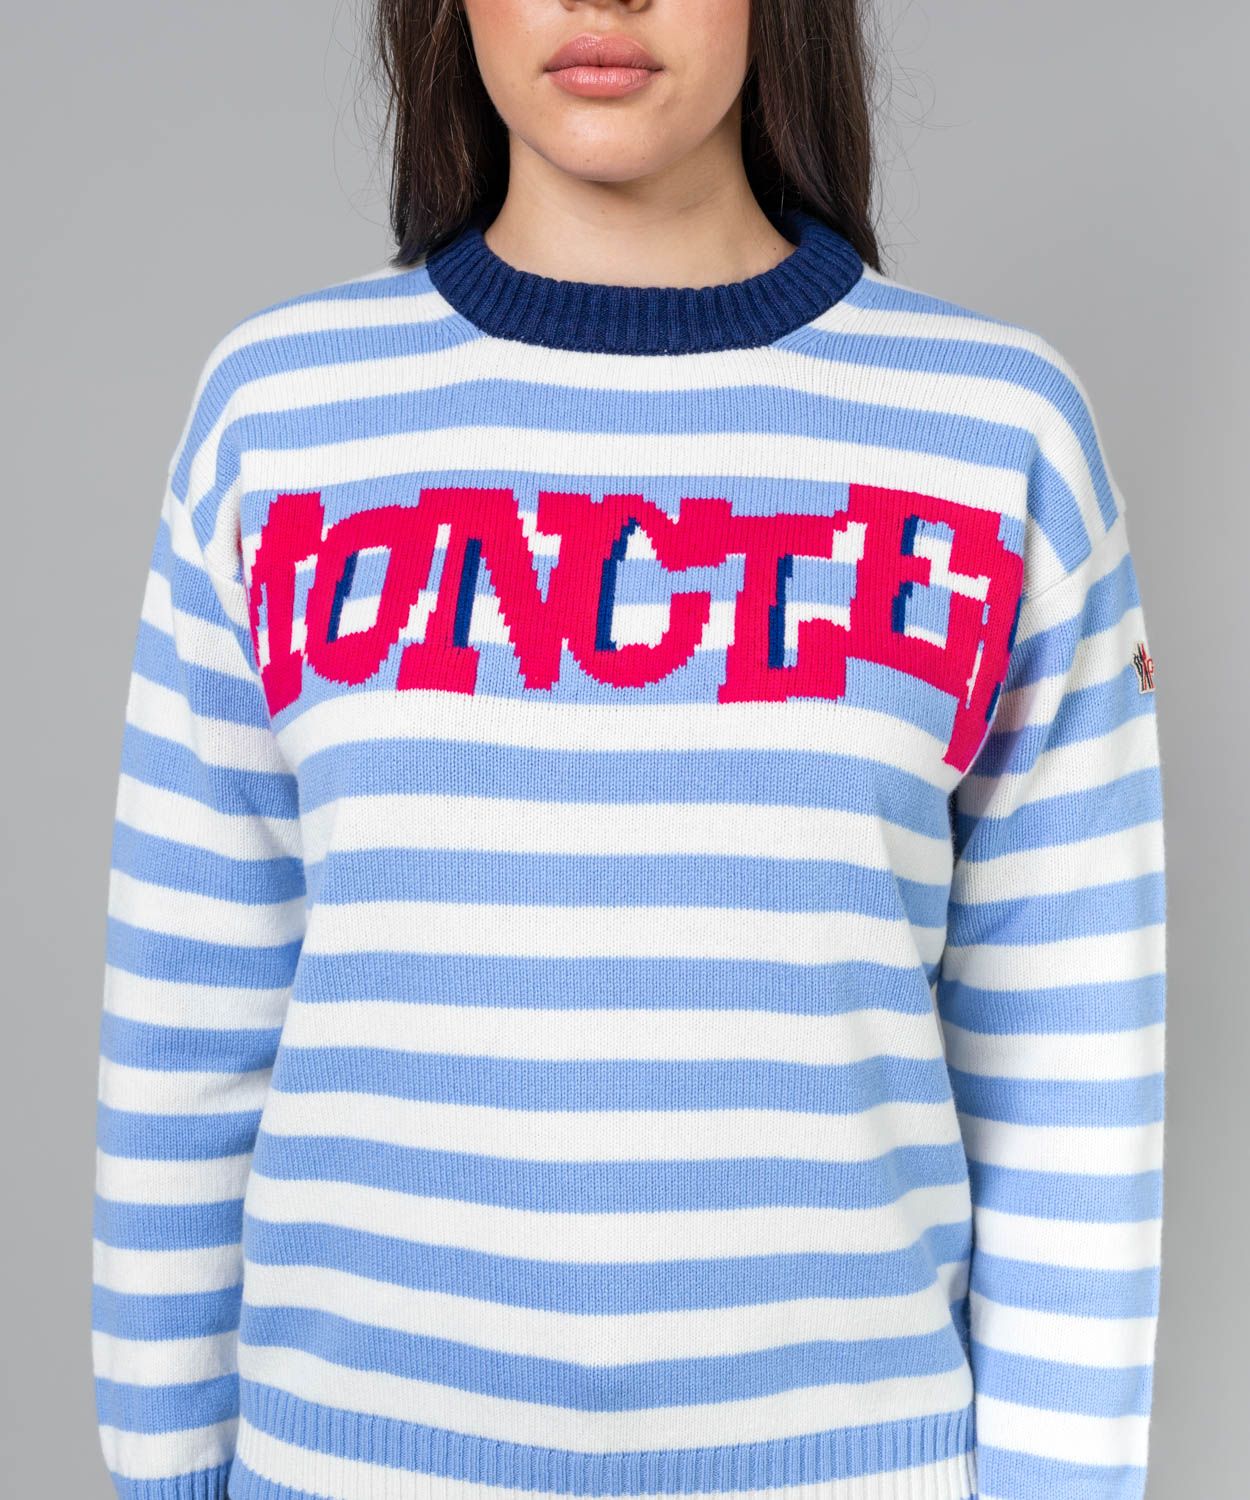 Women's Crewneck Sweater Sale